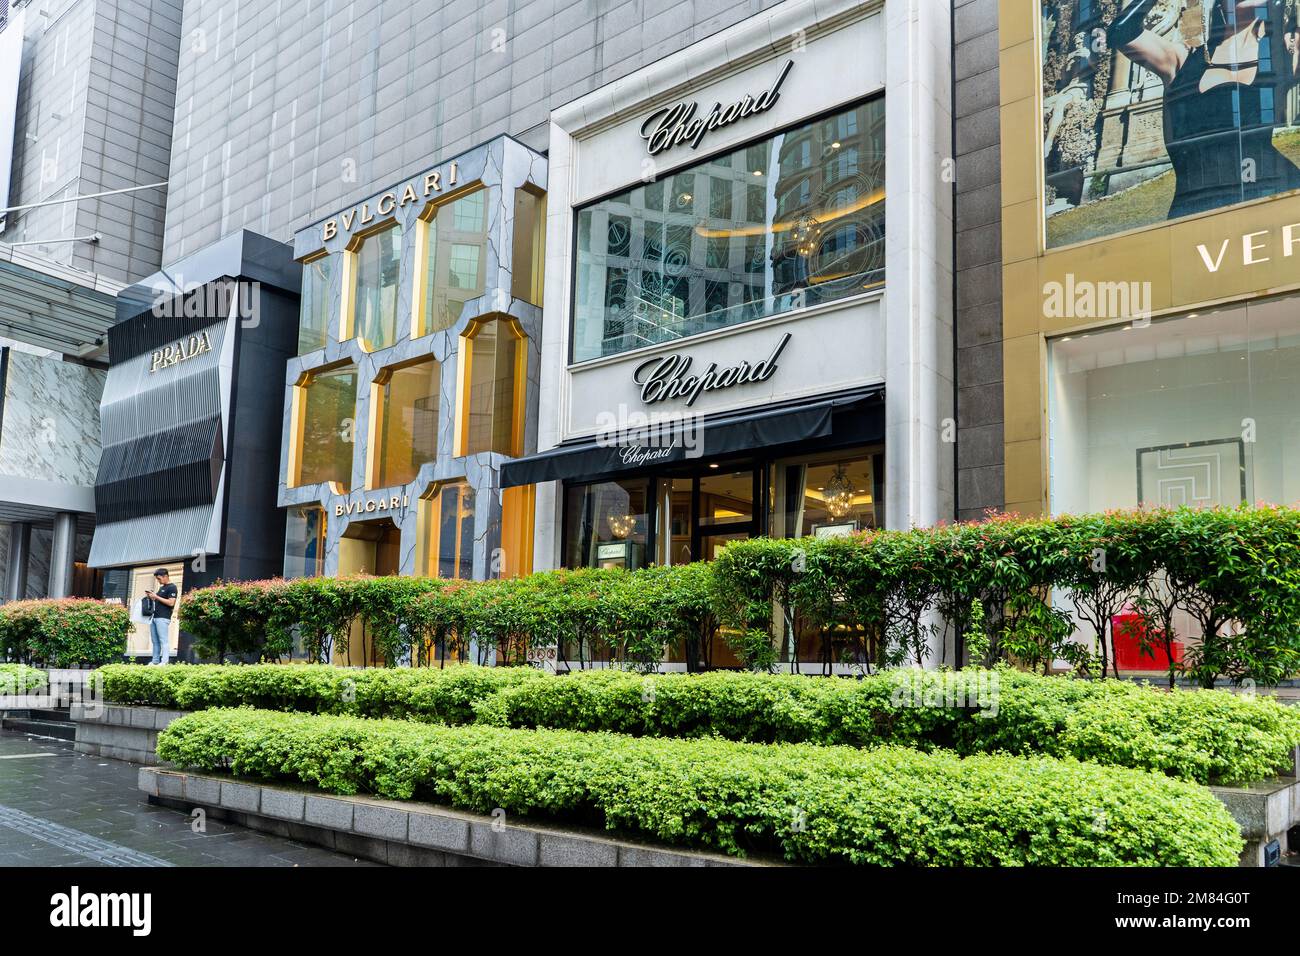 Kuala Lumpur, Malaysia, Pavillion Shopping Mall Stock Photo - Alamy